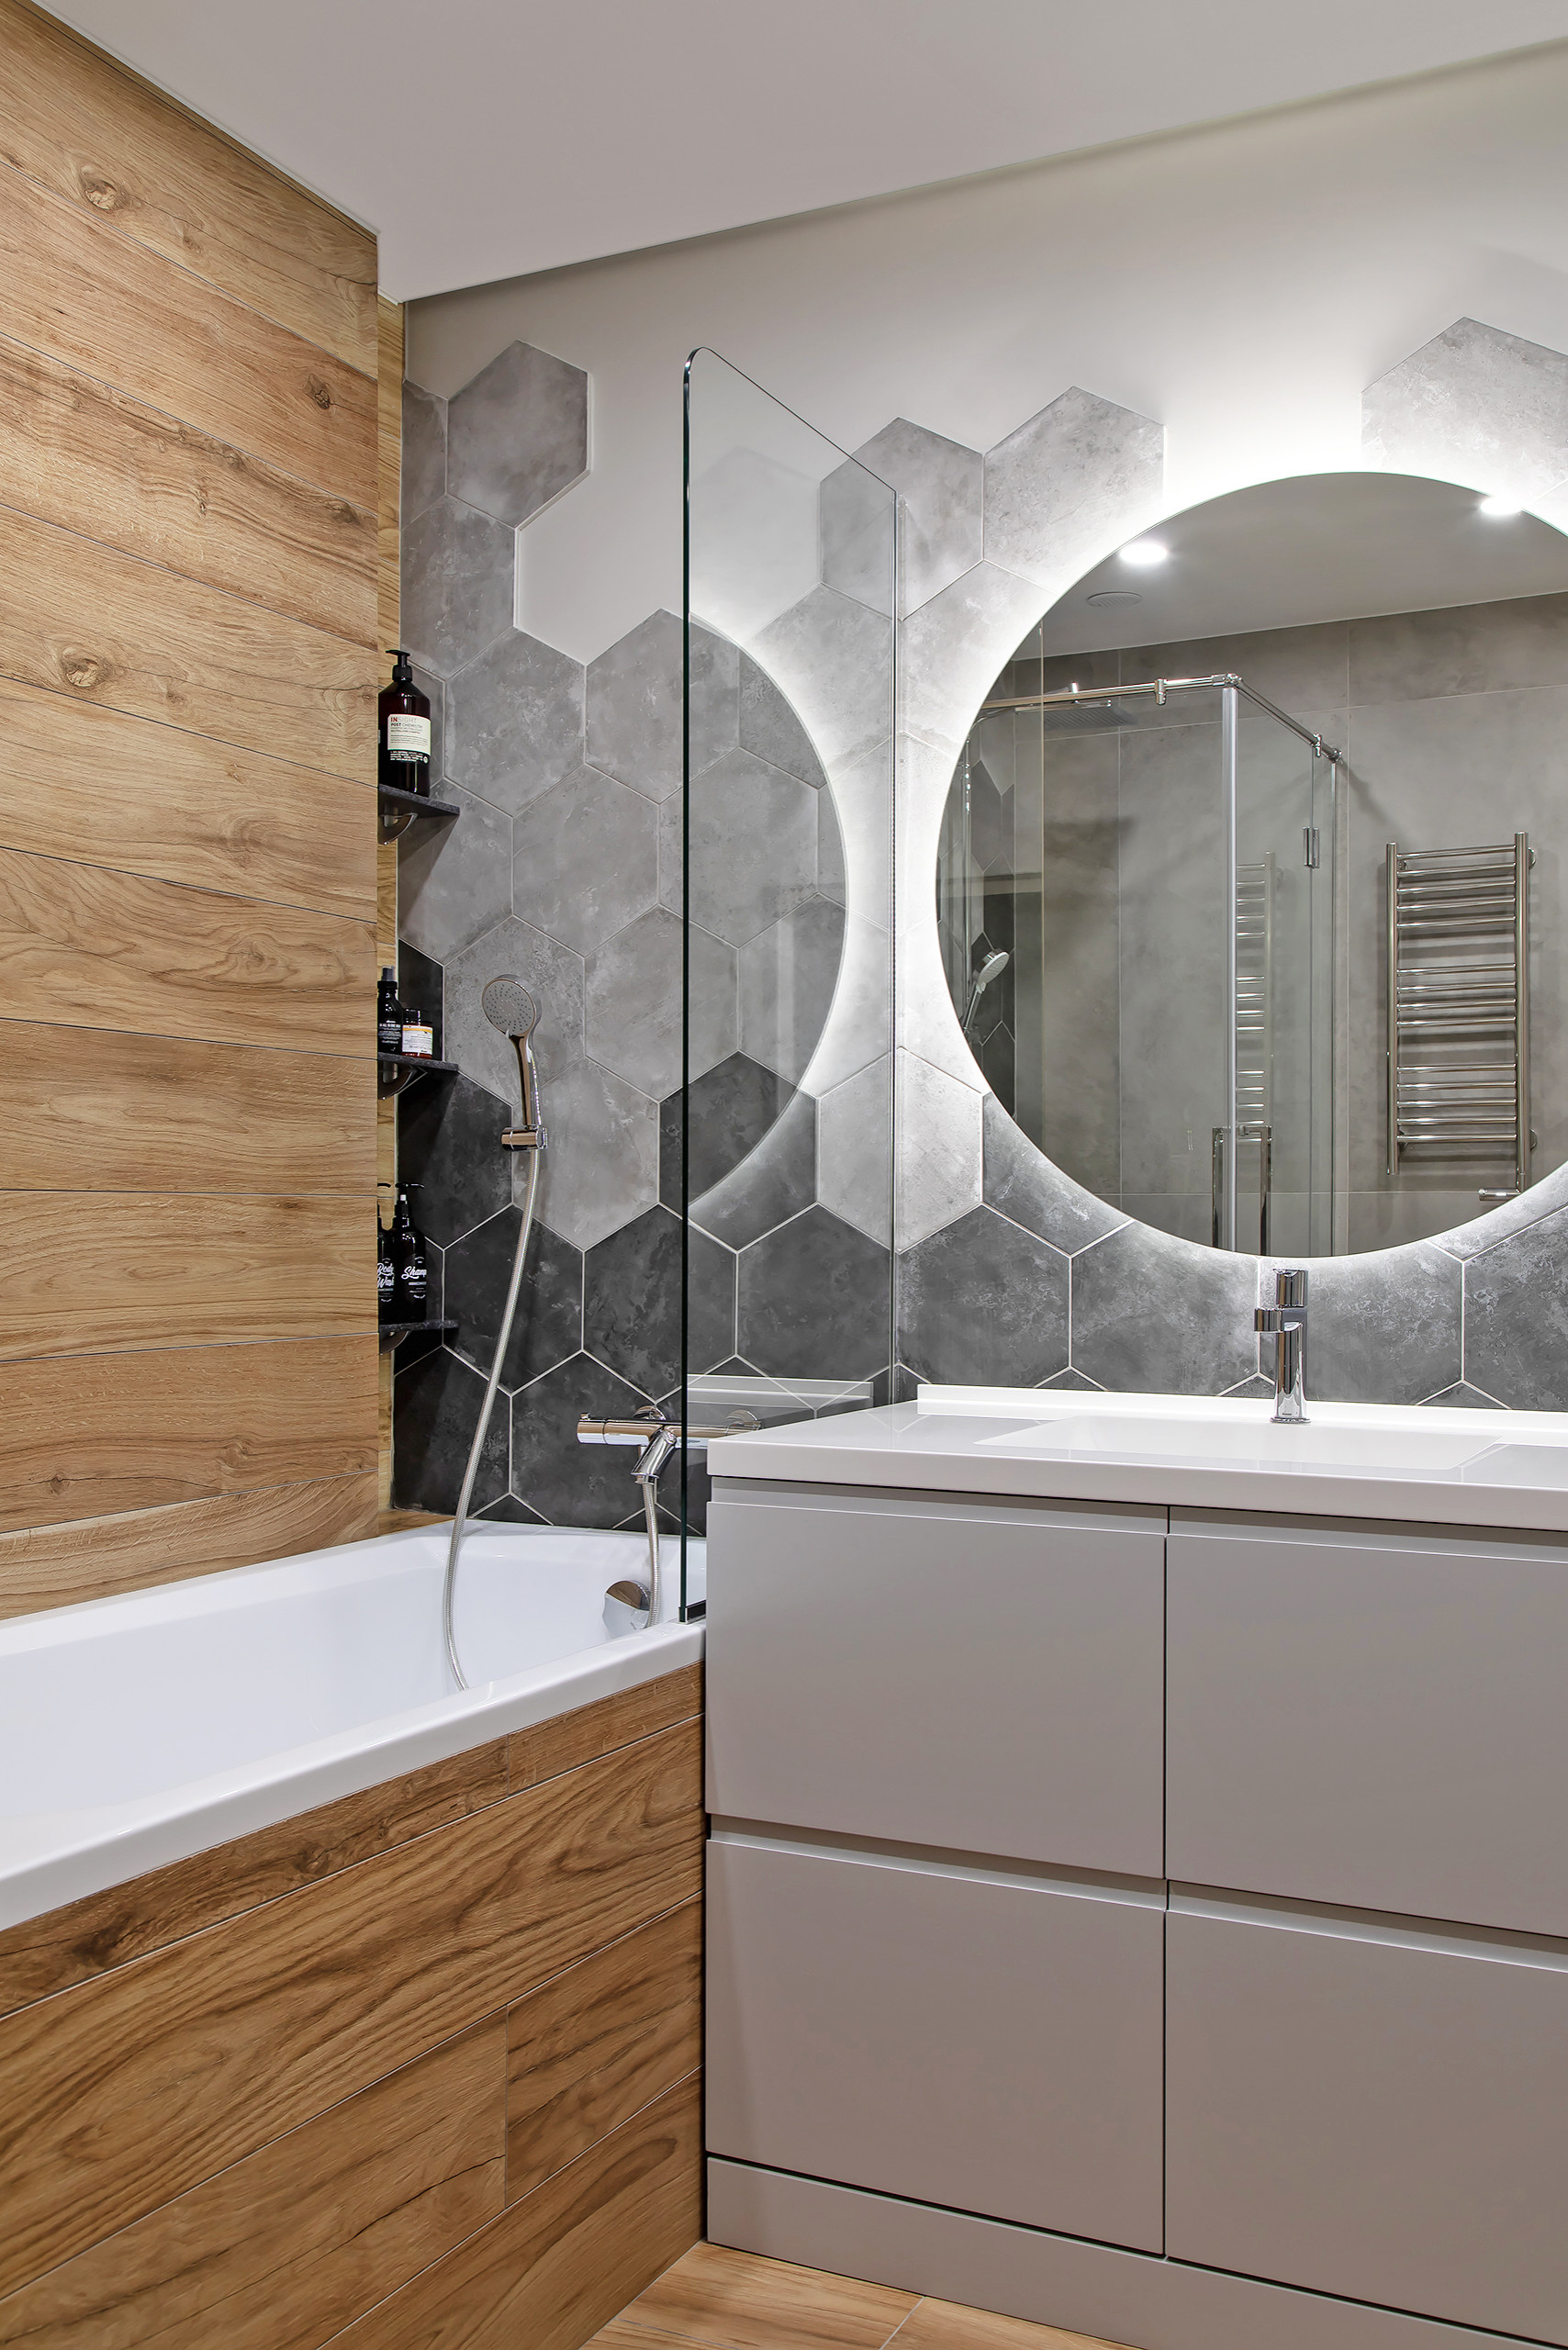 Мозаика для ванной — 100 фото идей как украсить ванную комнату мозаикой